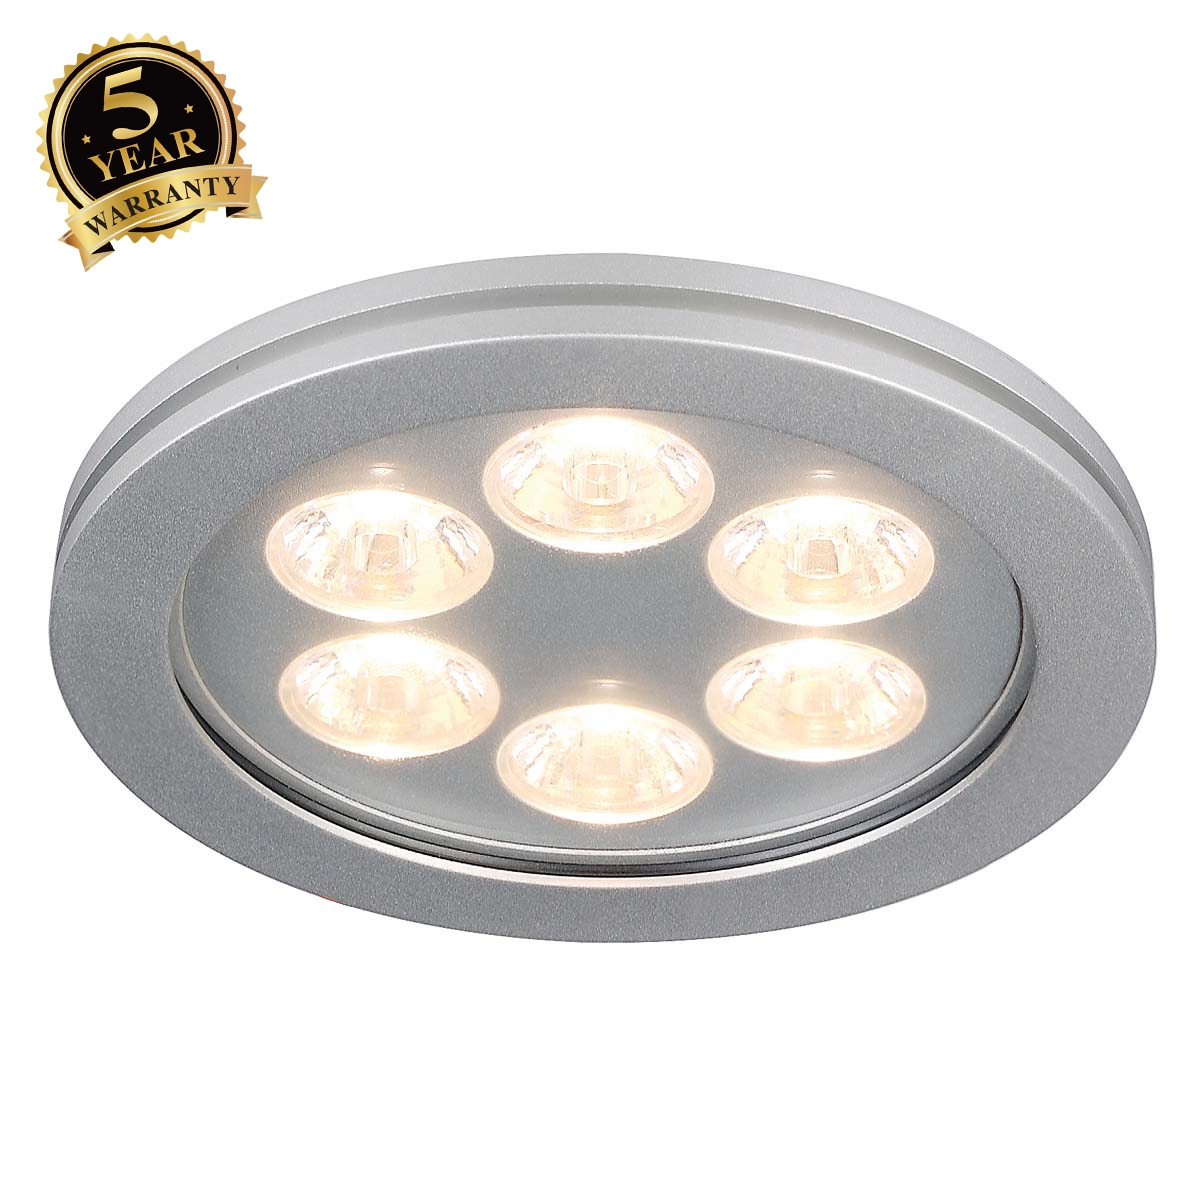 SLV EYEDOWN LED 6x1W downlight,round, alu, warm white, 3000K 111992